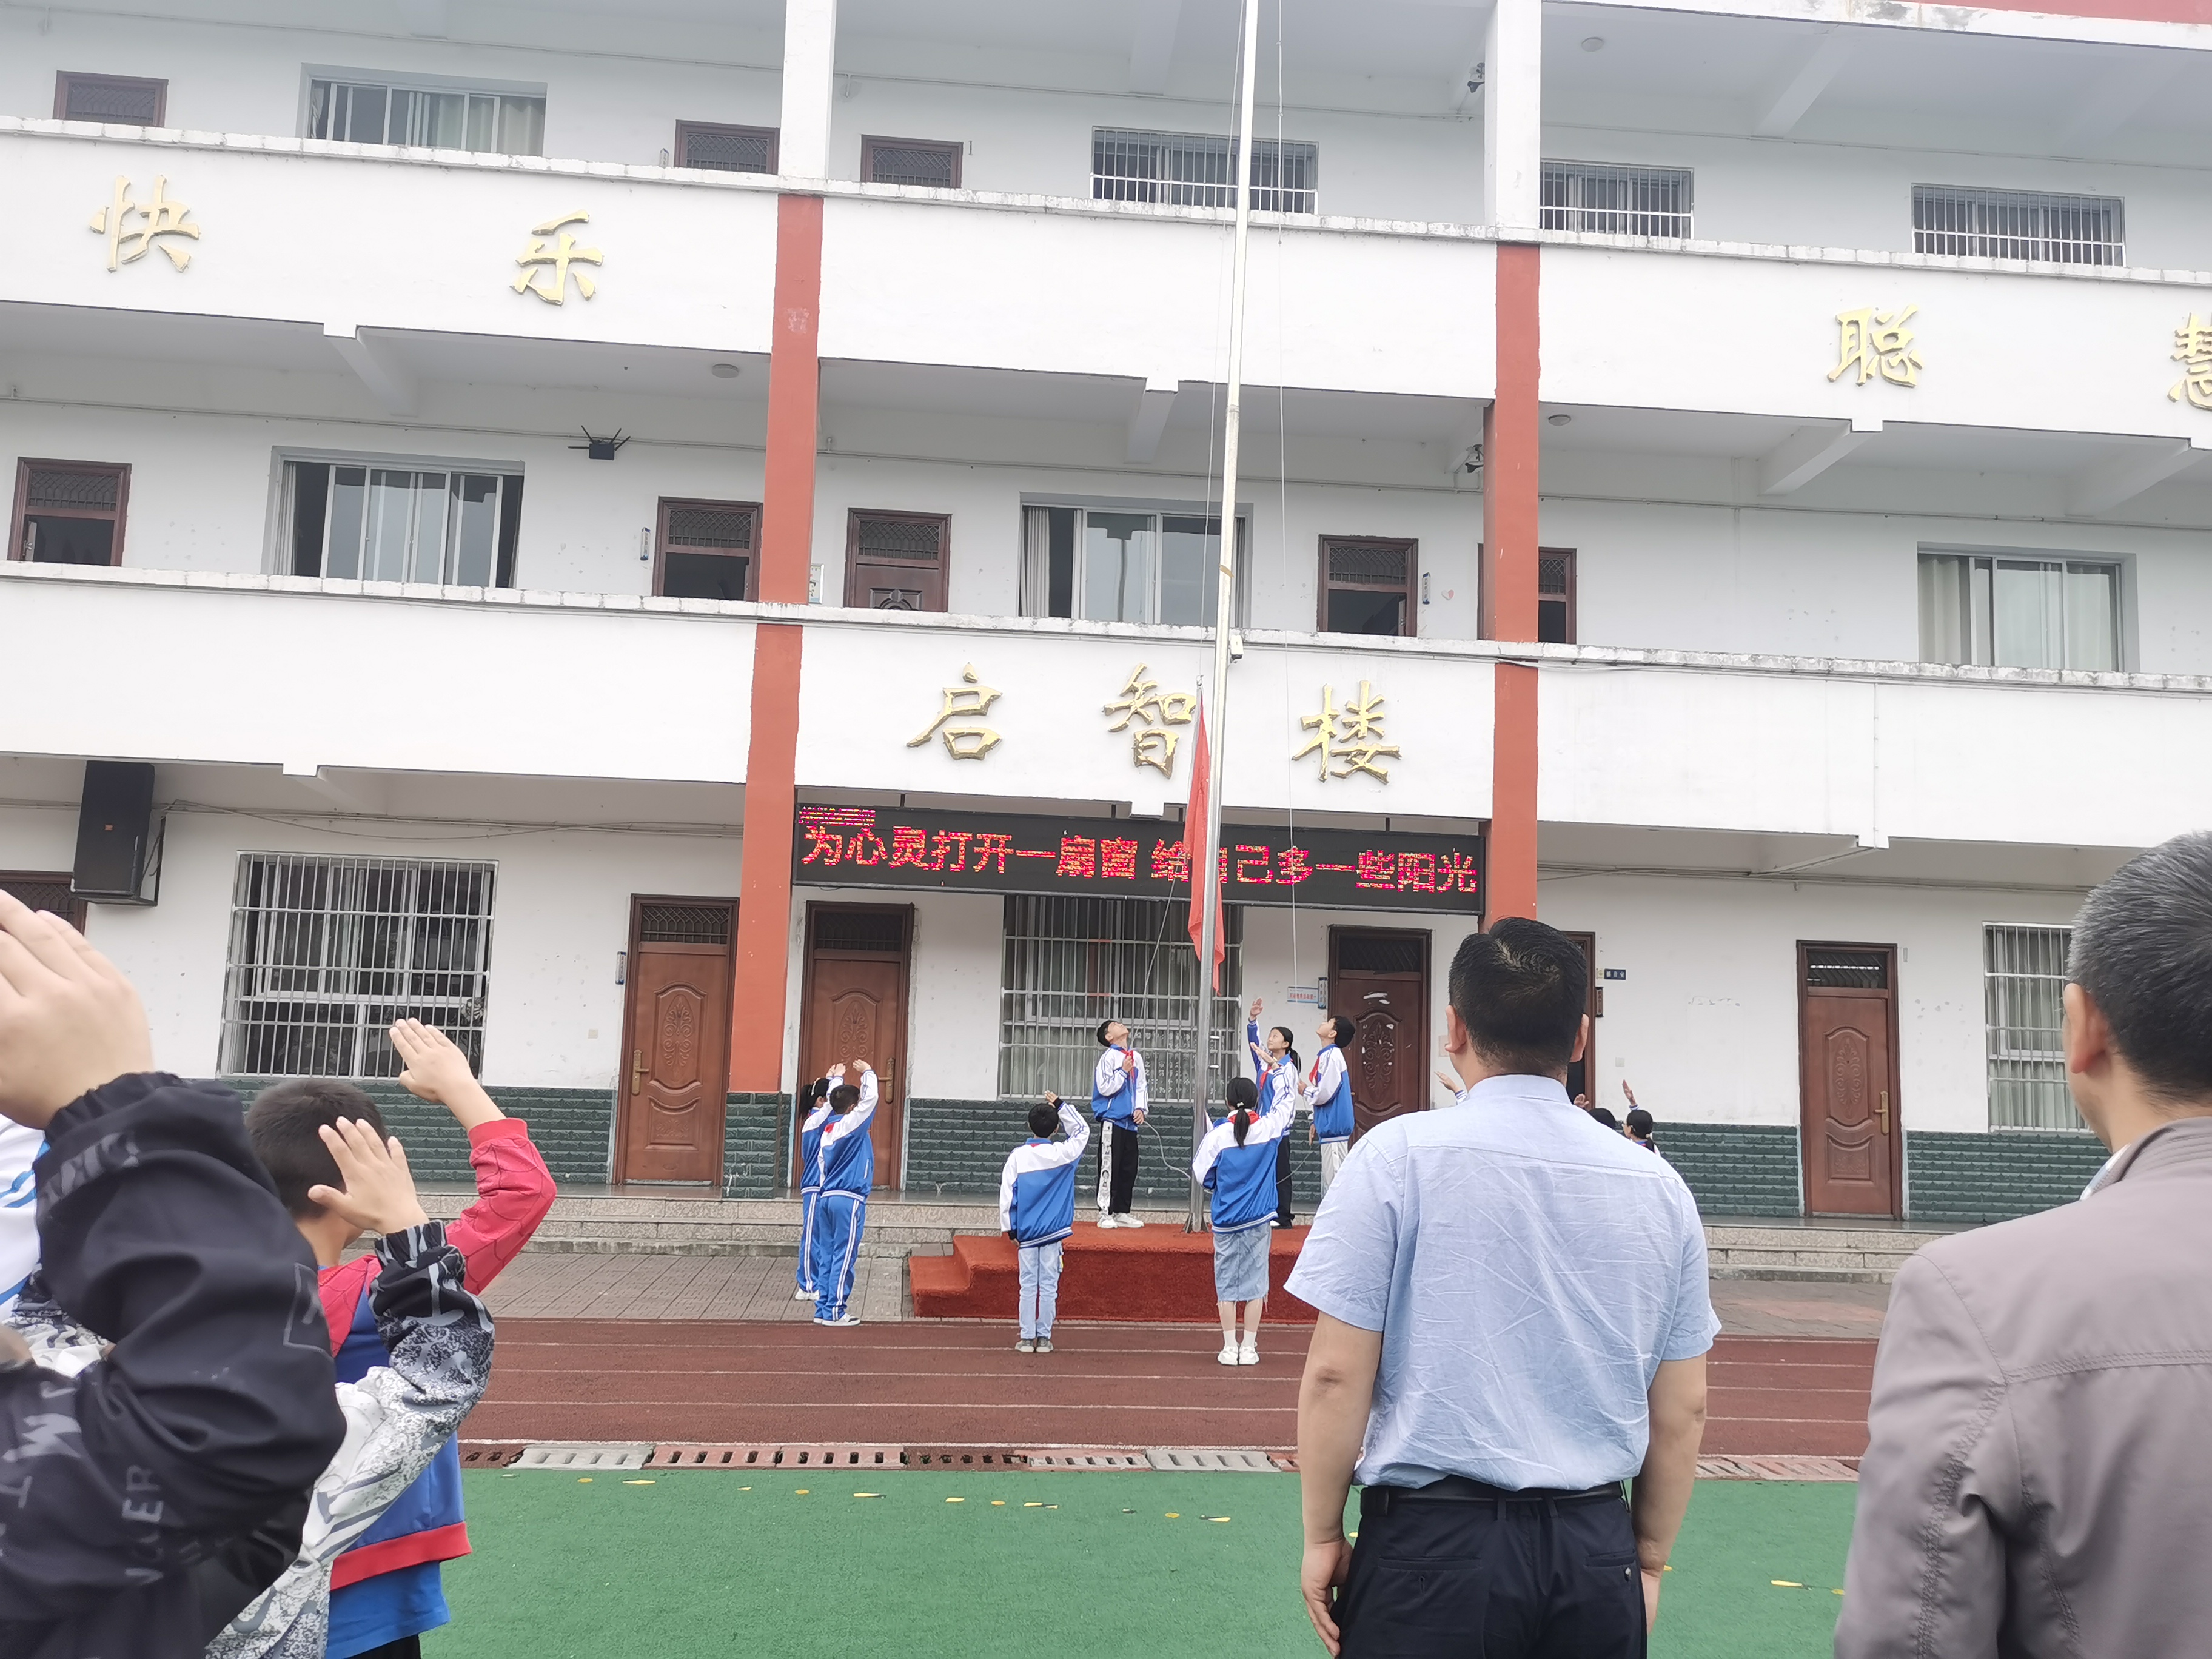 给心灵一片晴空，共享健康生活 ——汉阴县双乳镇中心小学开展525心理健康教育周系列活动